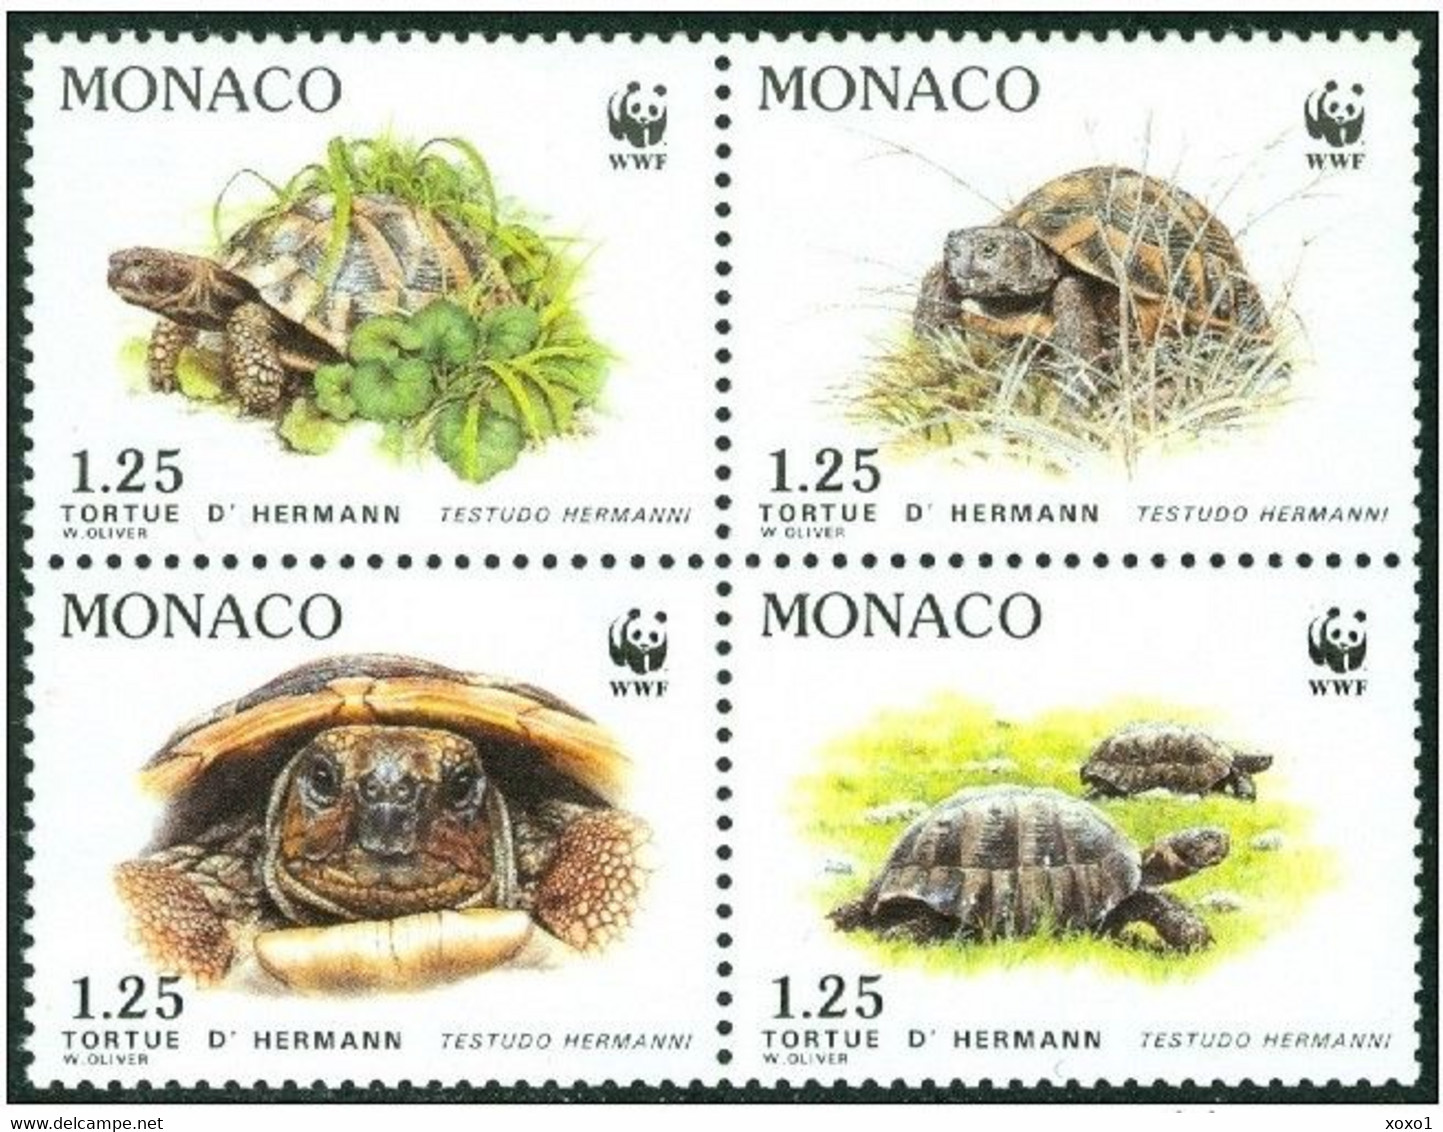 Monaco 1991 MiNr. 2046 - 2049 Reptiles Turtles Hermann's Tortoise WWF   4v  MNH** 5,00 € - Ongebruikt